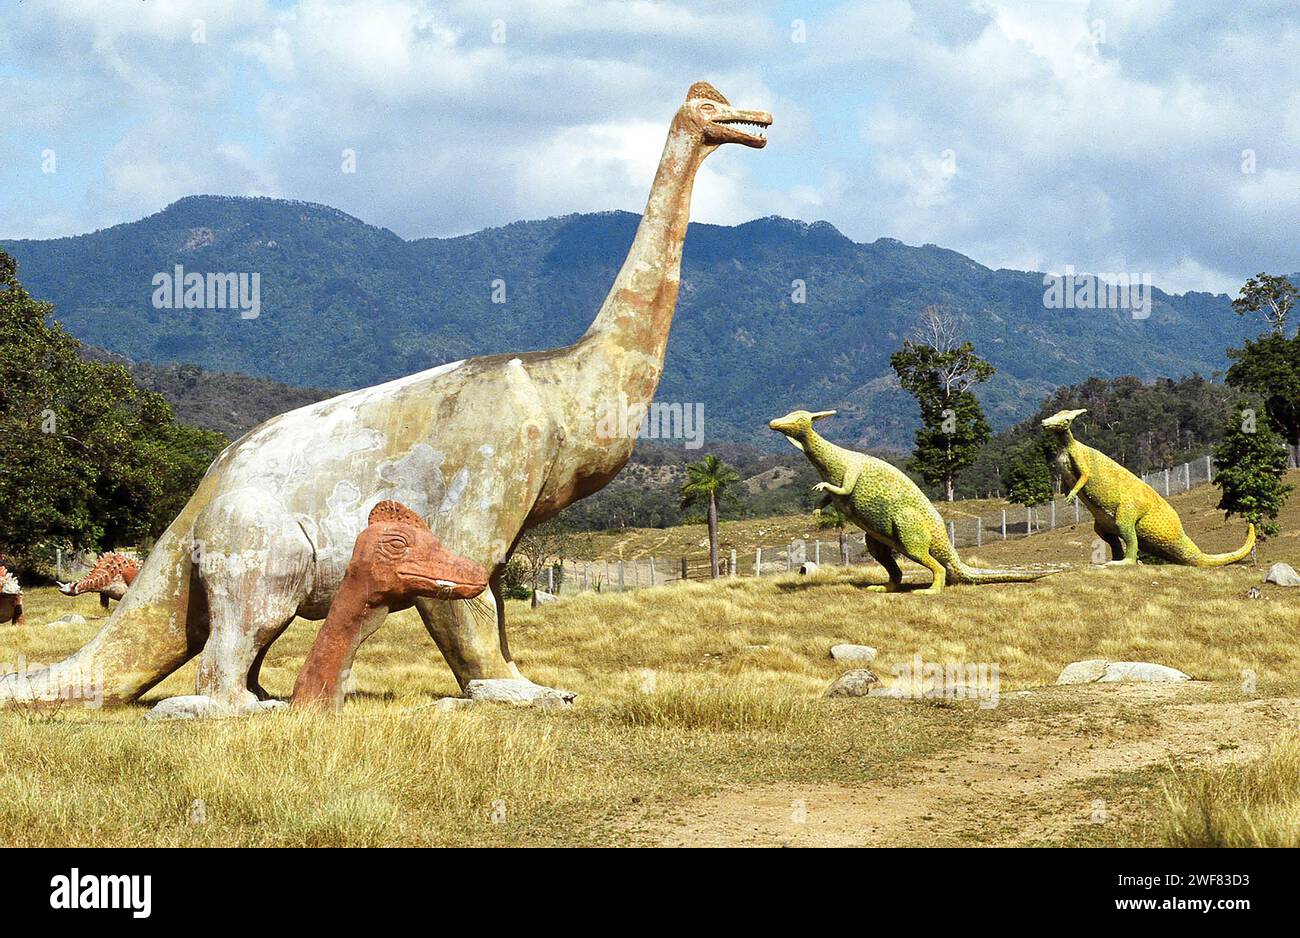 Giant concrete dinosaurs populate a valley in Baconao Park near Santiago de Cuba. Stock Photo